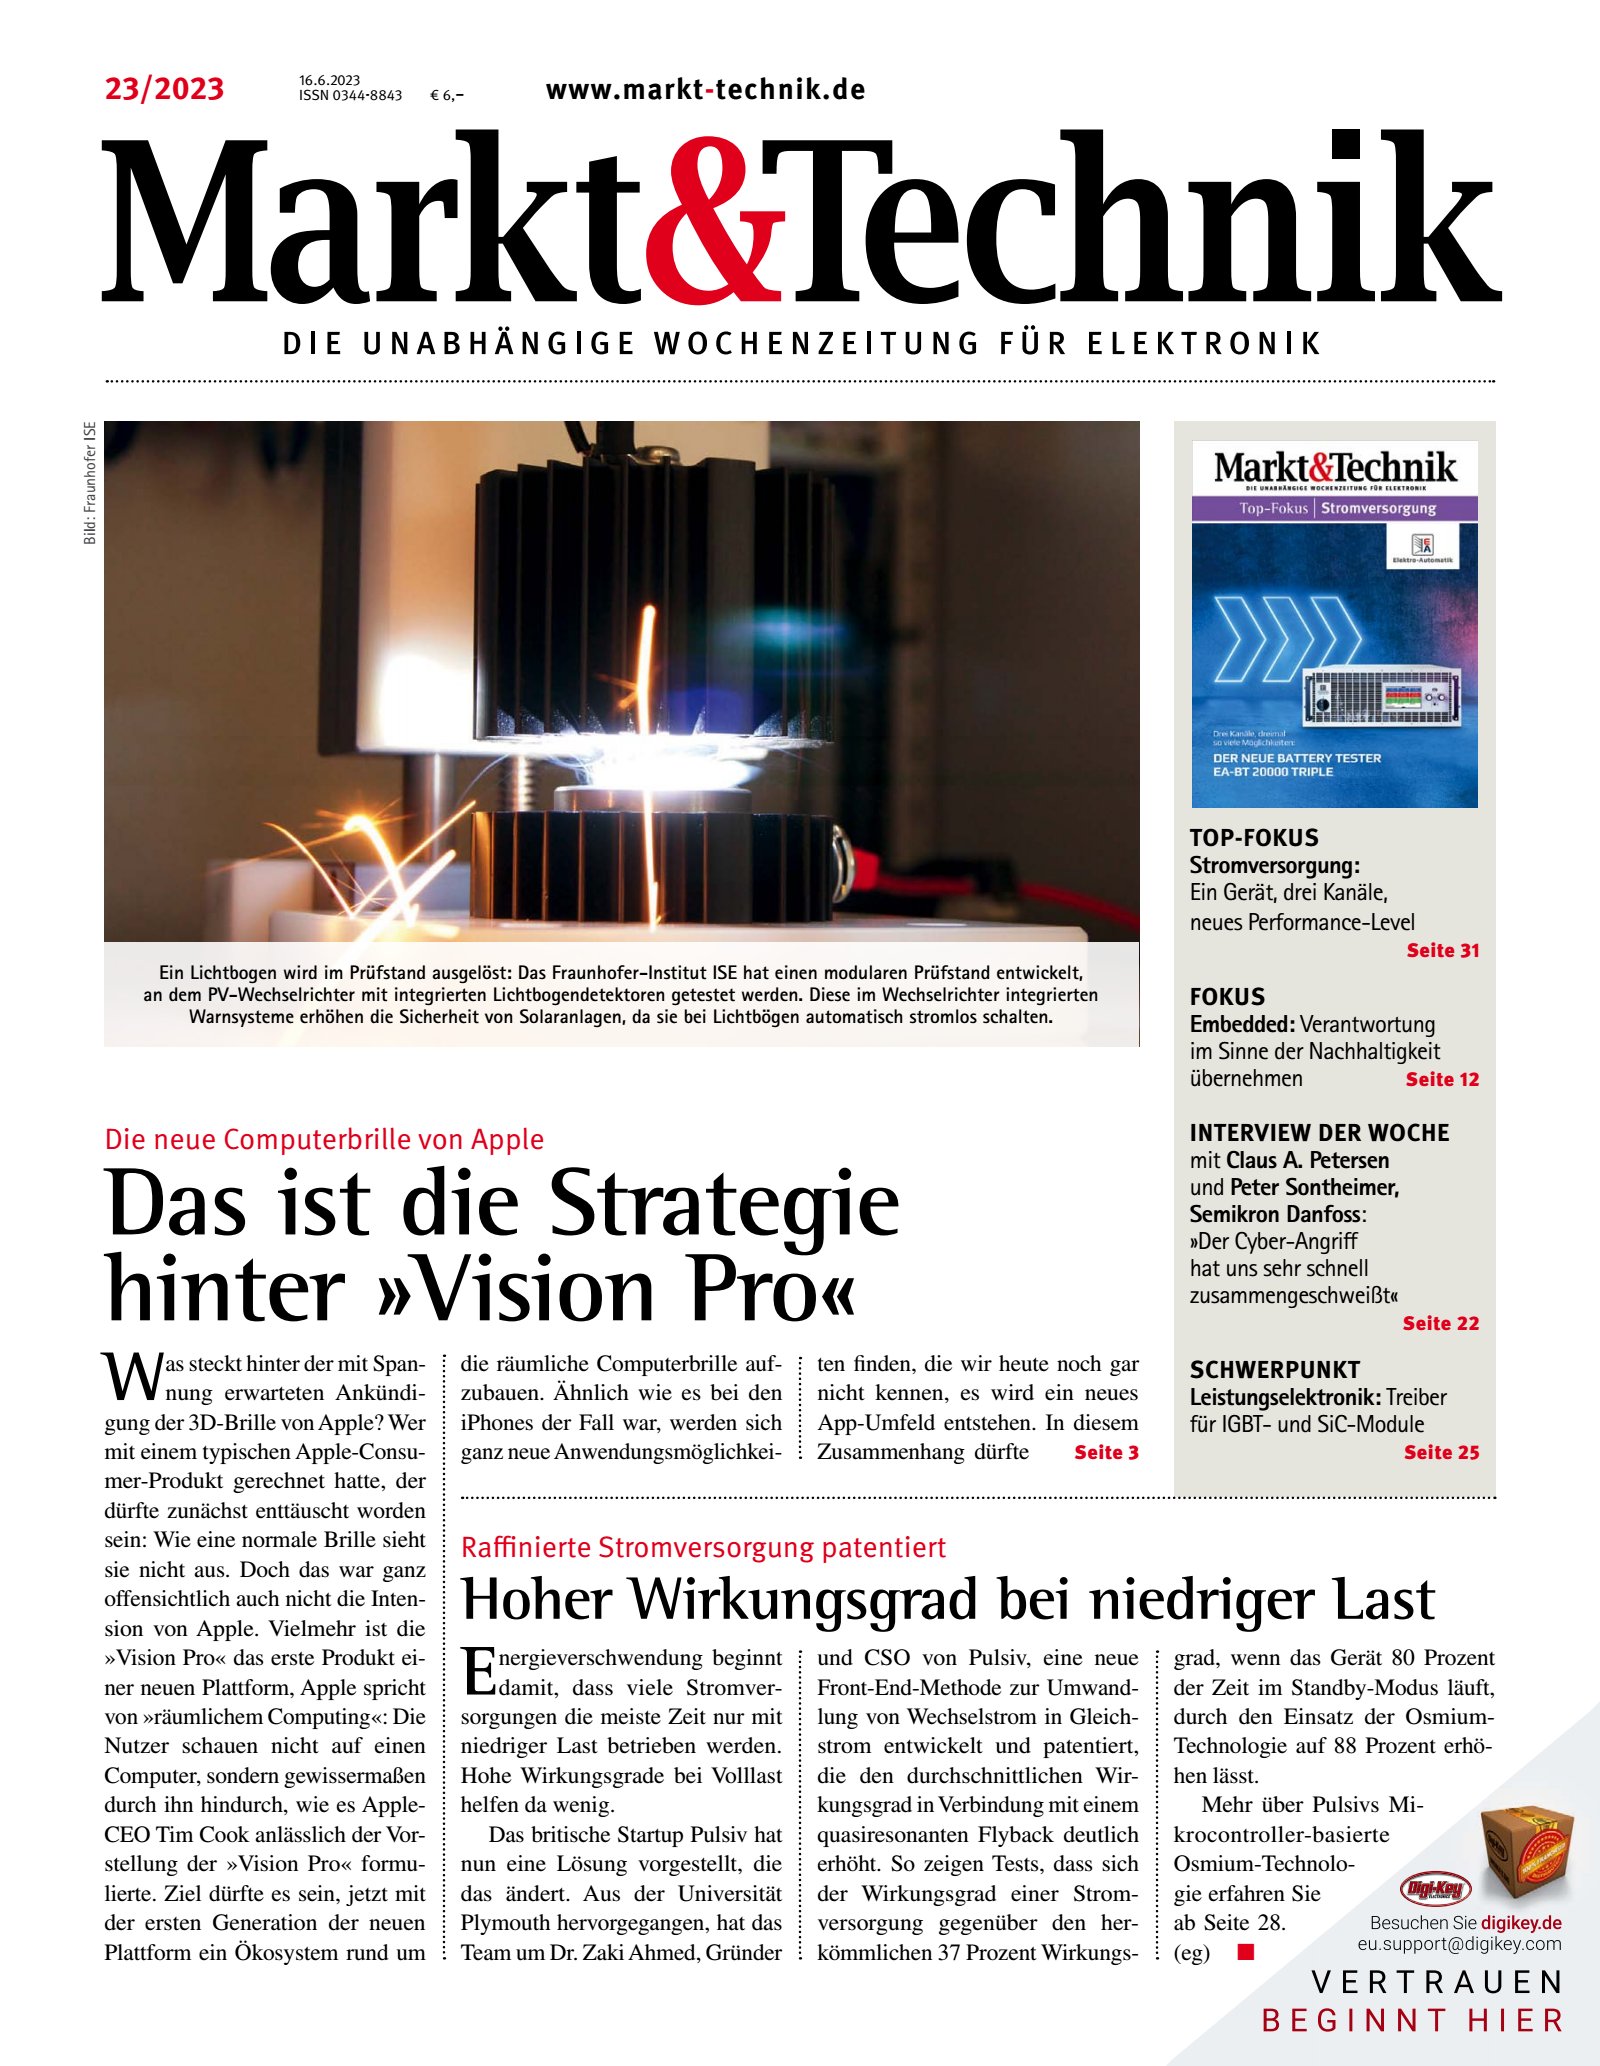 Markt&Technik 0023/2023 Digital